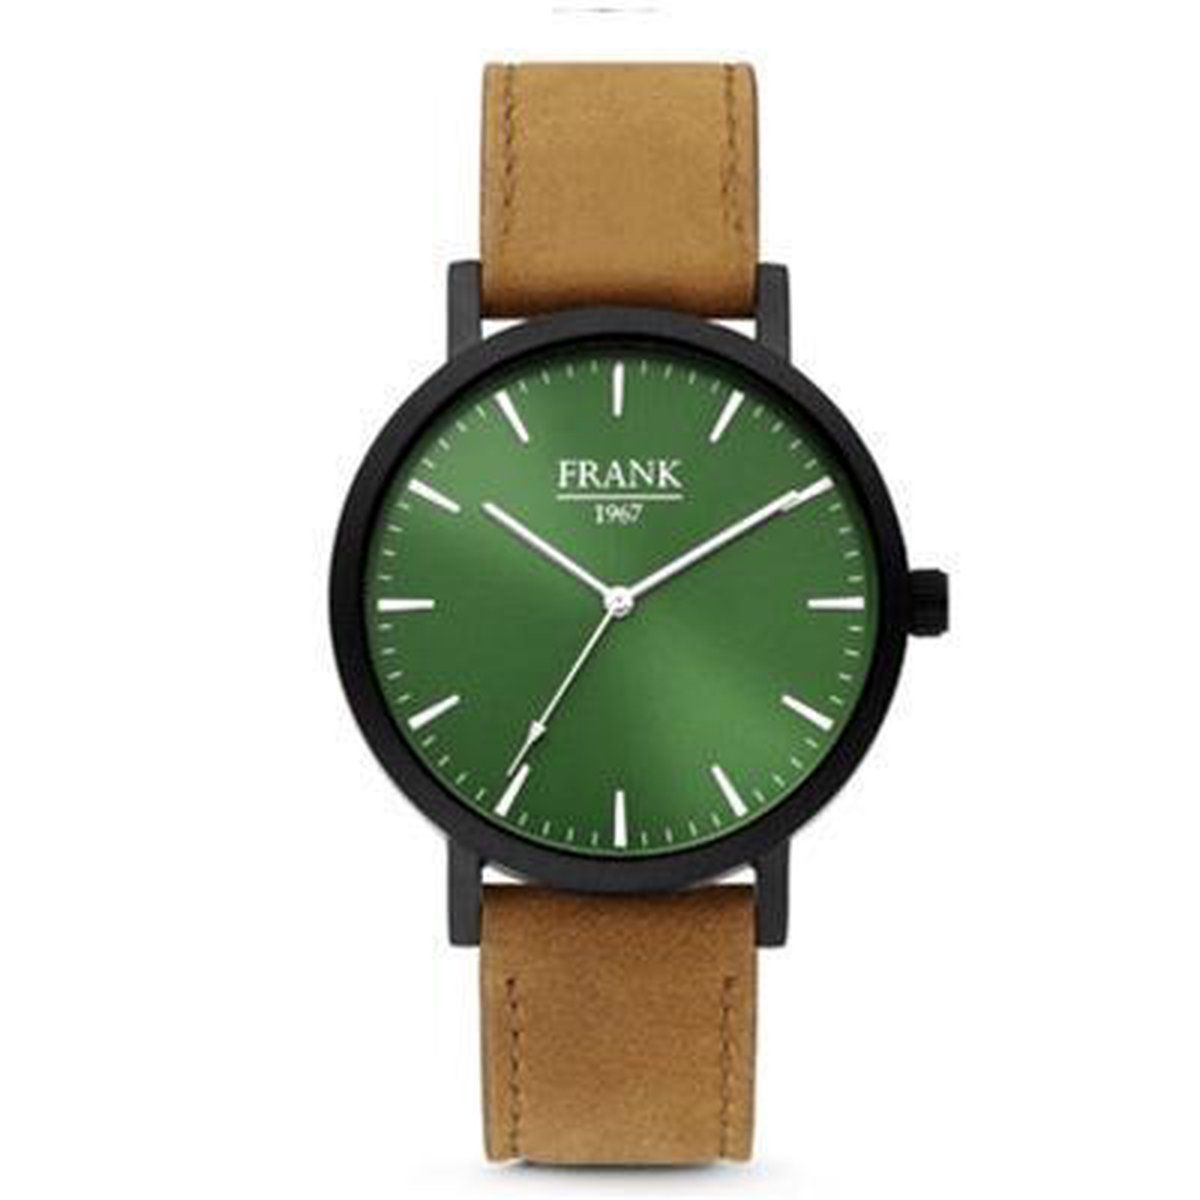 Frank 1967 7FW-0008 - Metalen horloge met lederen band - bruin en groen -Doorsnee 42 mm